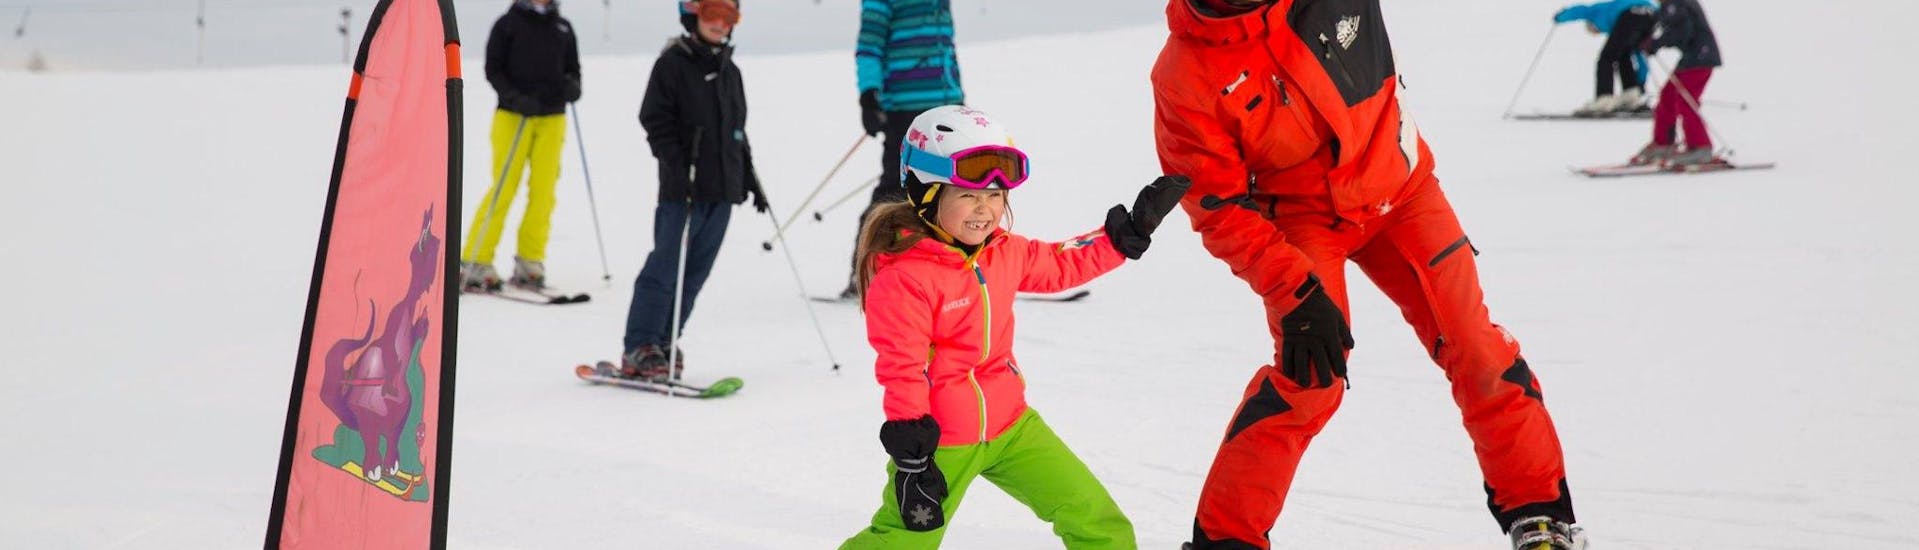 Cours de ski Enfants dès 4 ans - Premier cours avec Skischule Zahmer Kaiser.